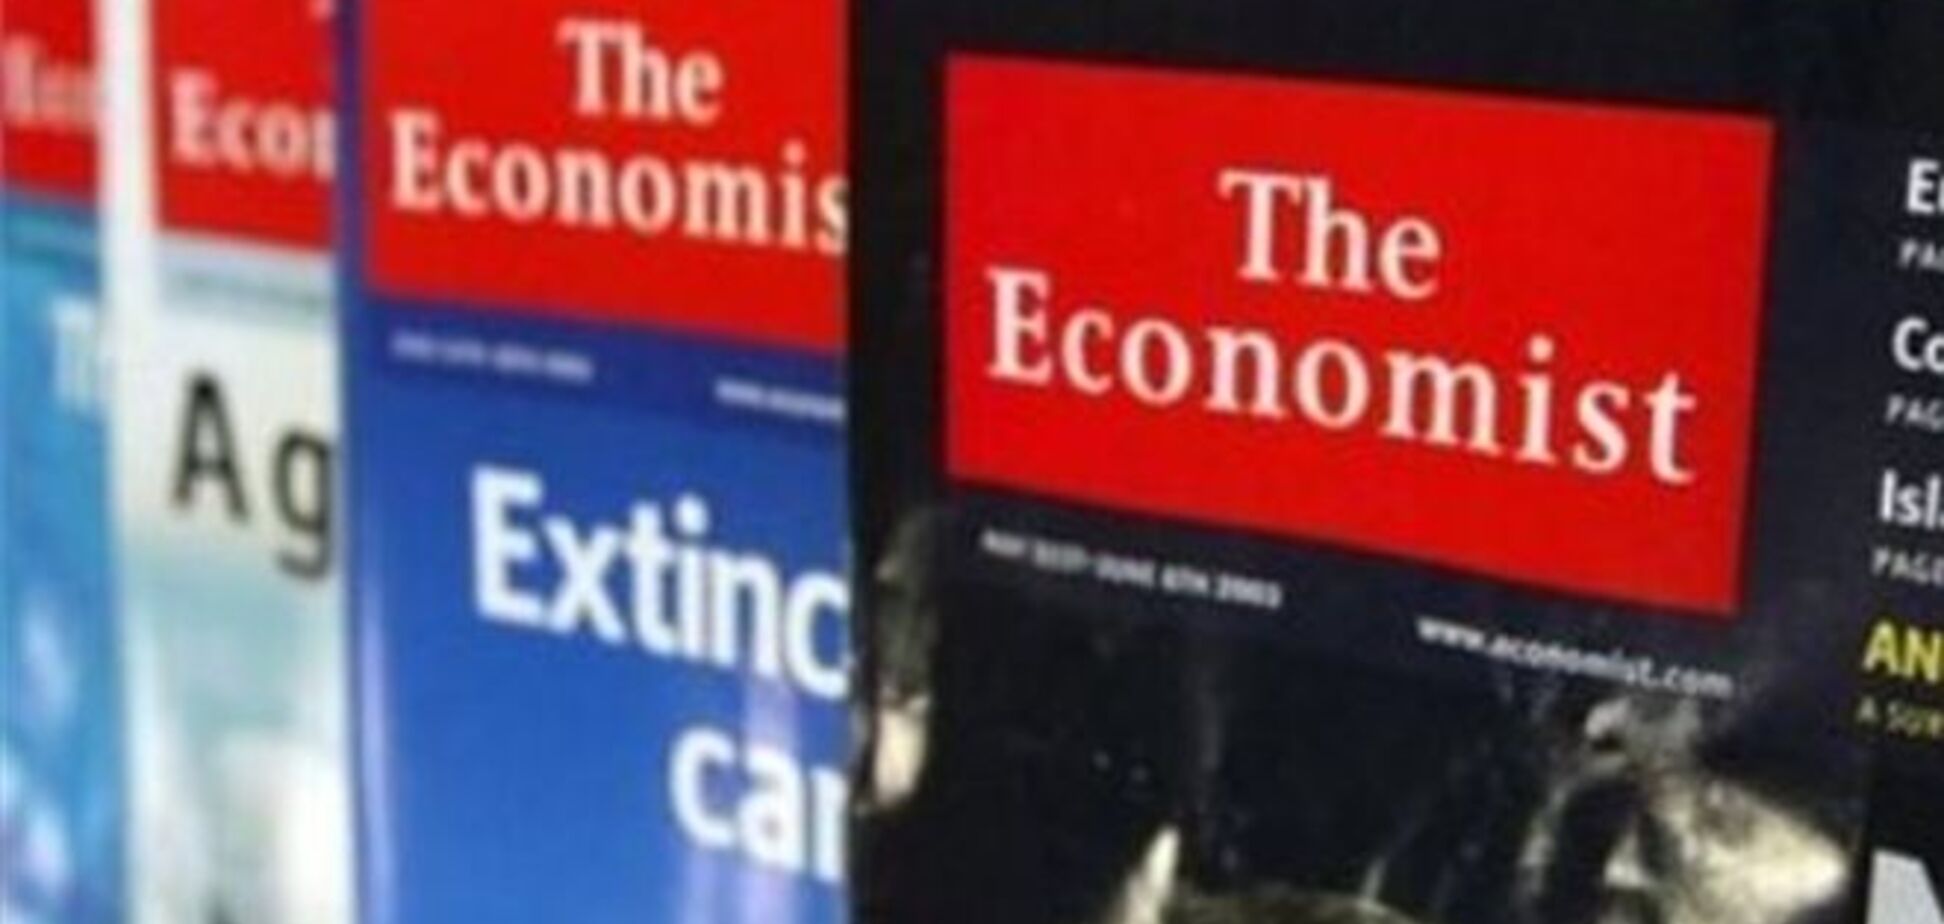 Кабмин: в Украине не требовали взяток за распространение The Economist